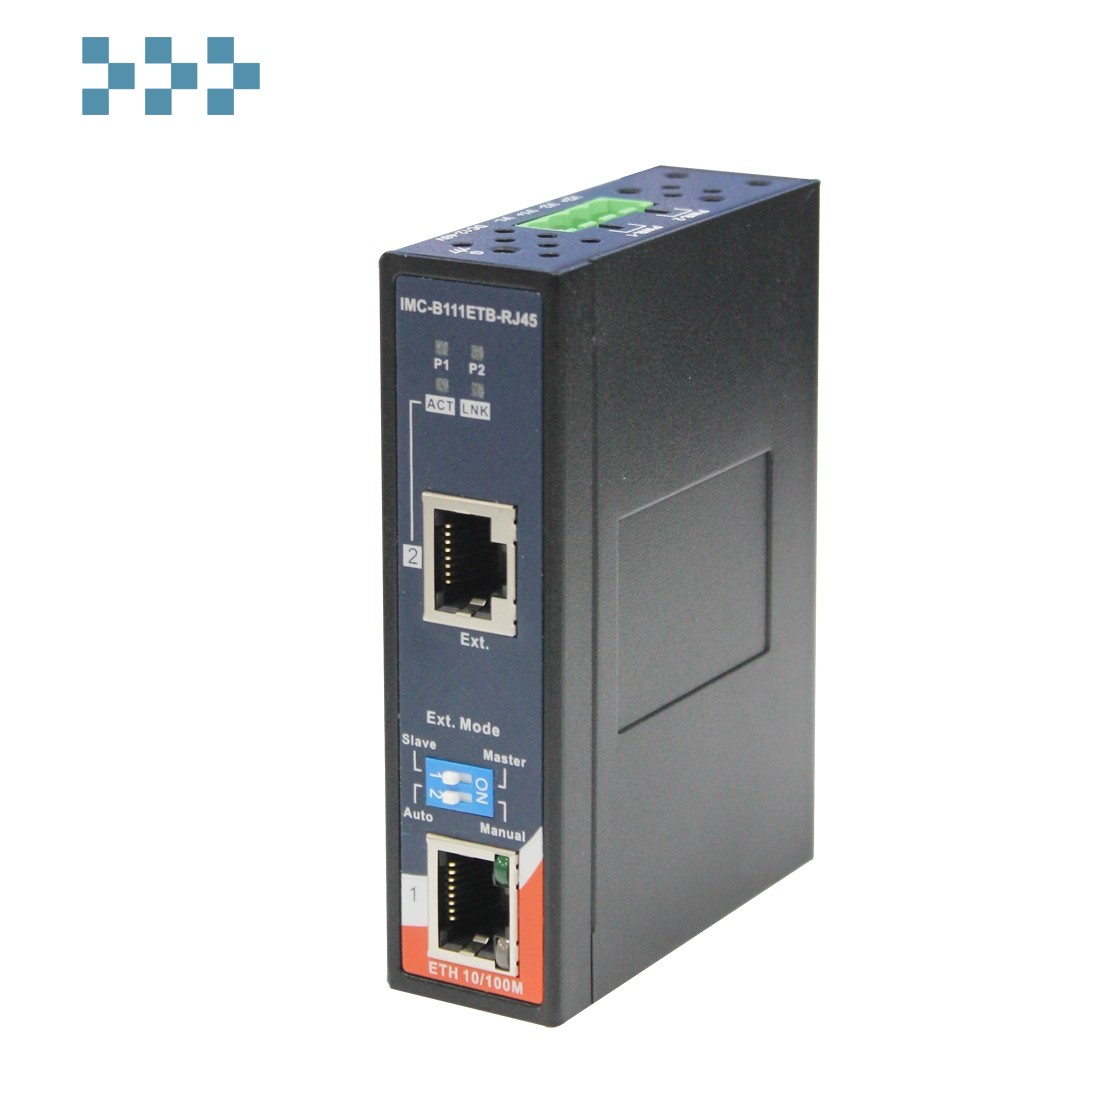 Промышленный Ethernet удлинитель ORing IMC-B111ETB-RJ45